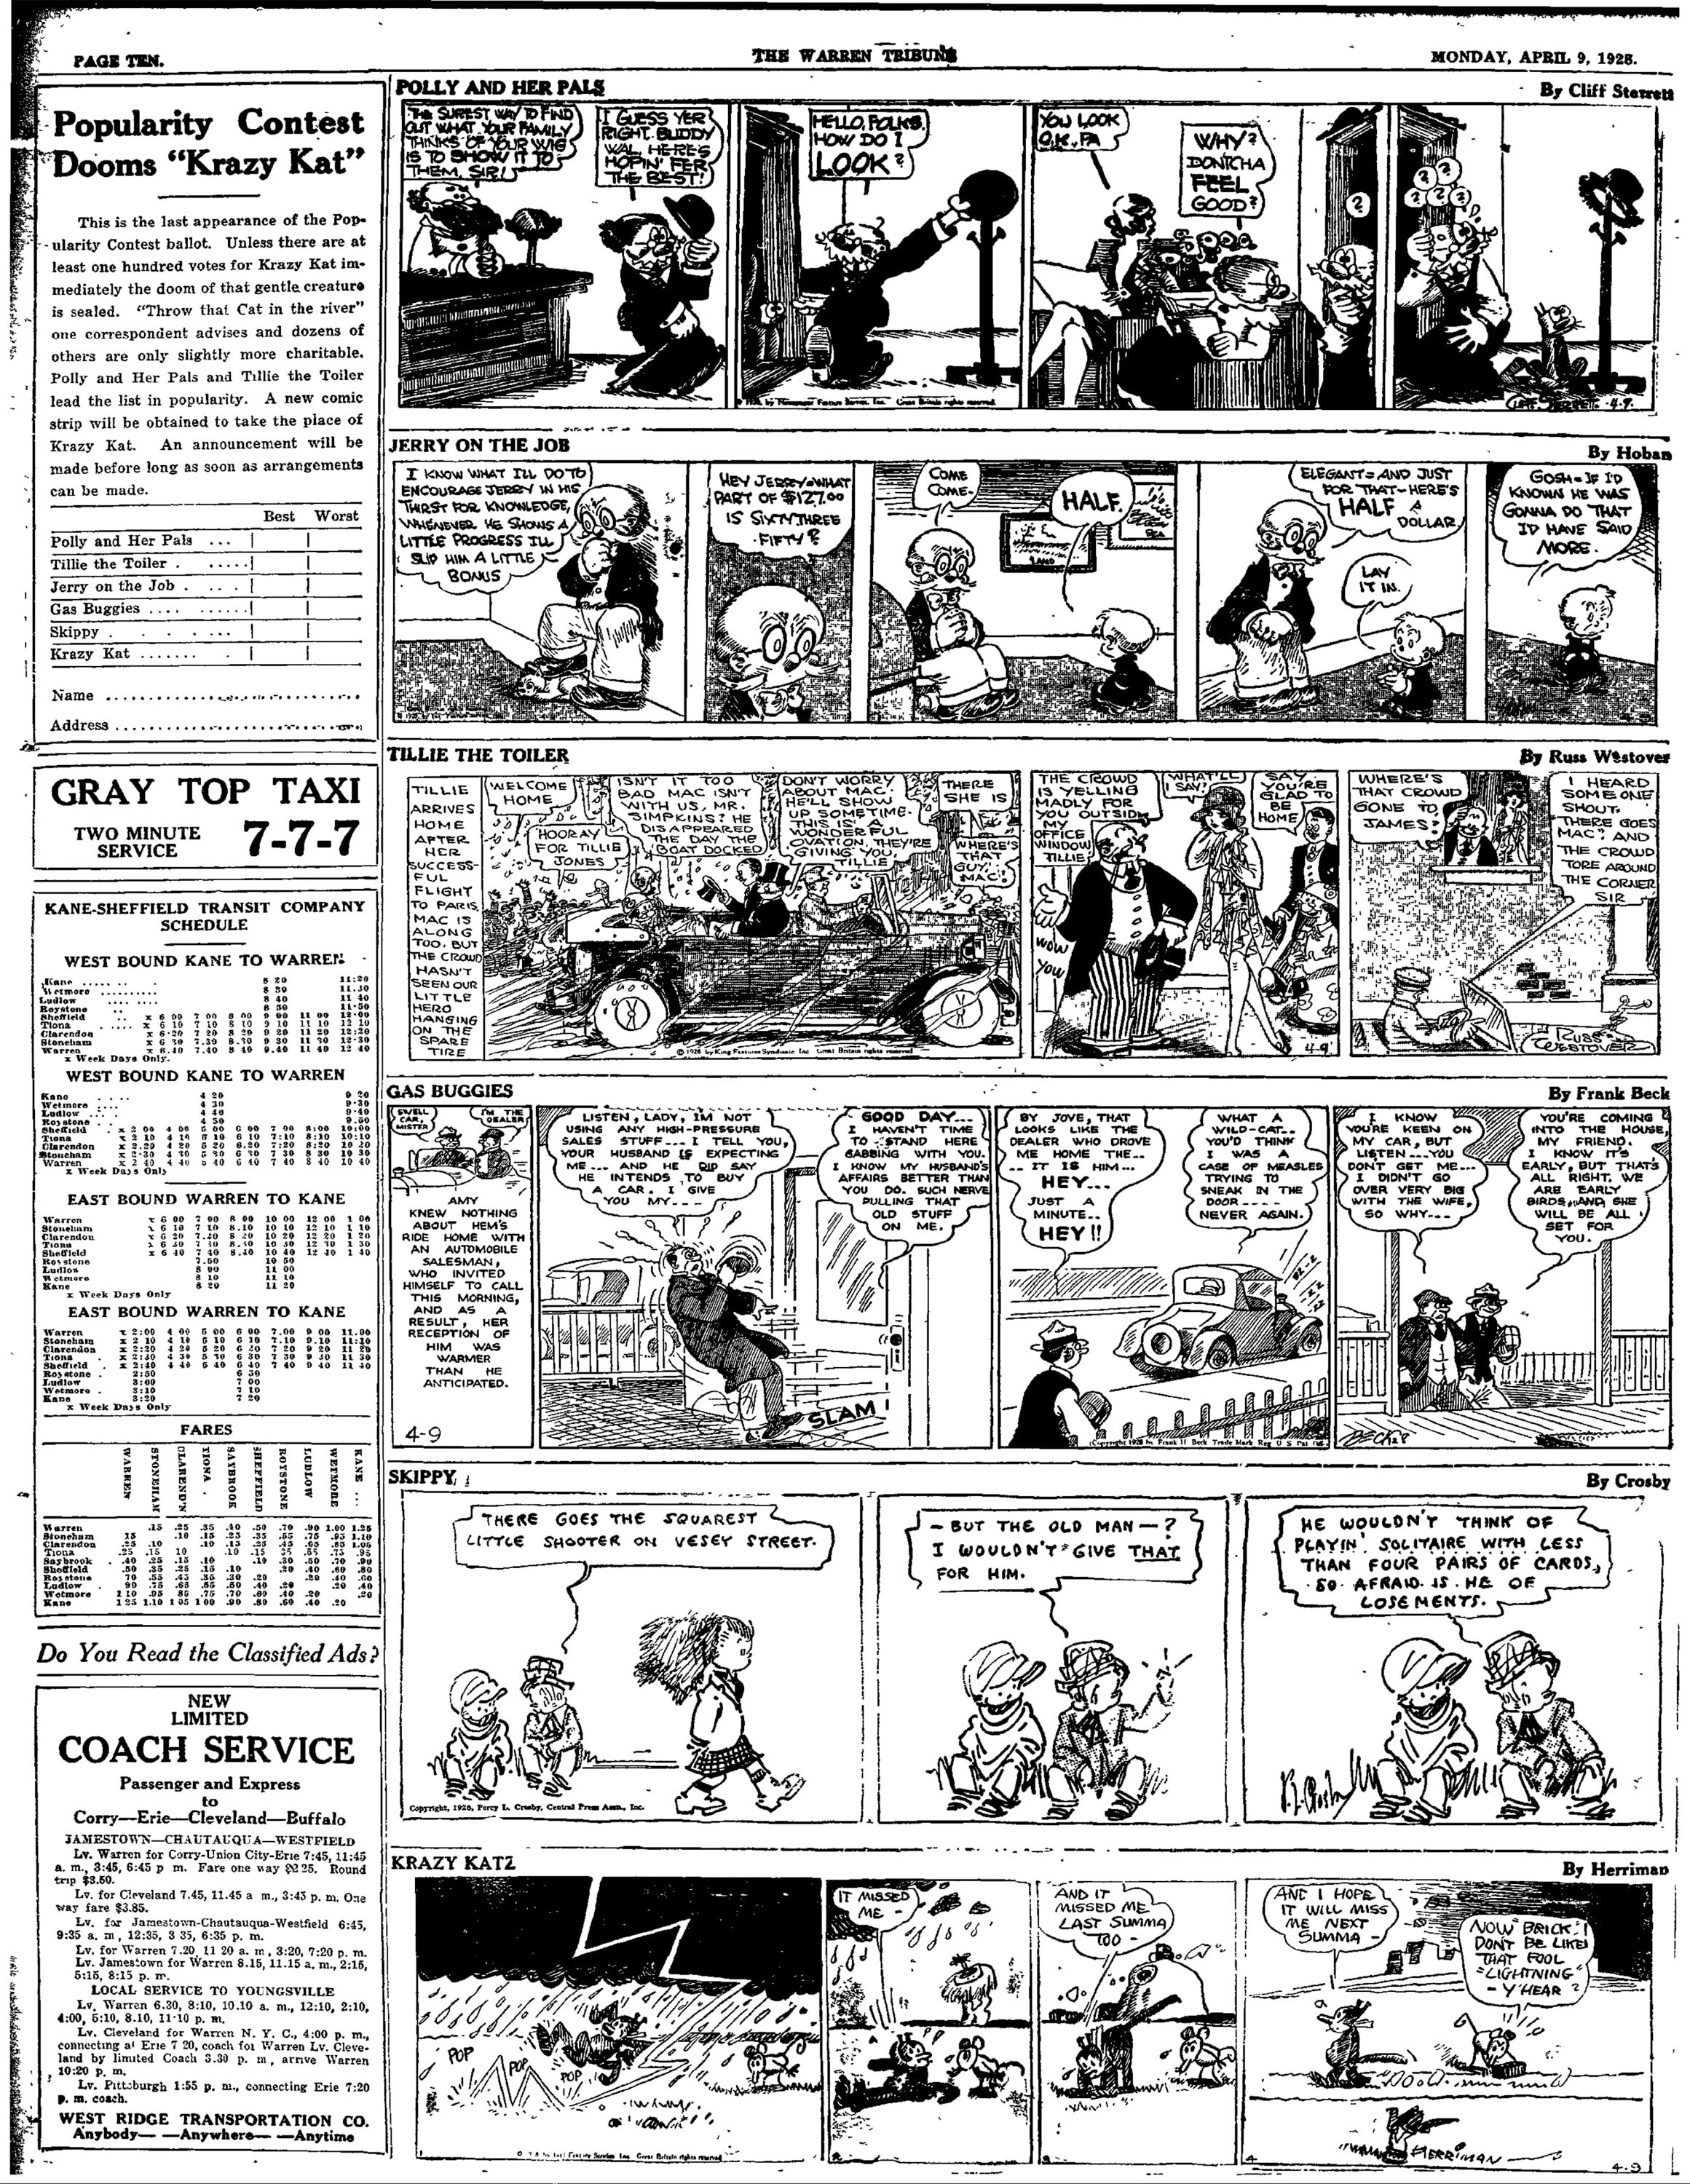 19-1928-04-09-warren-tribune-krazykat-loses-comics-poll.jpg